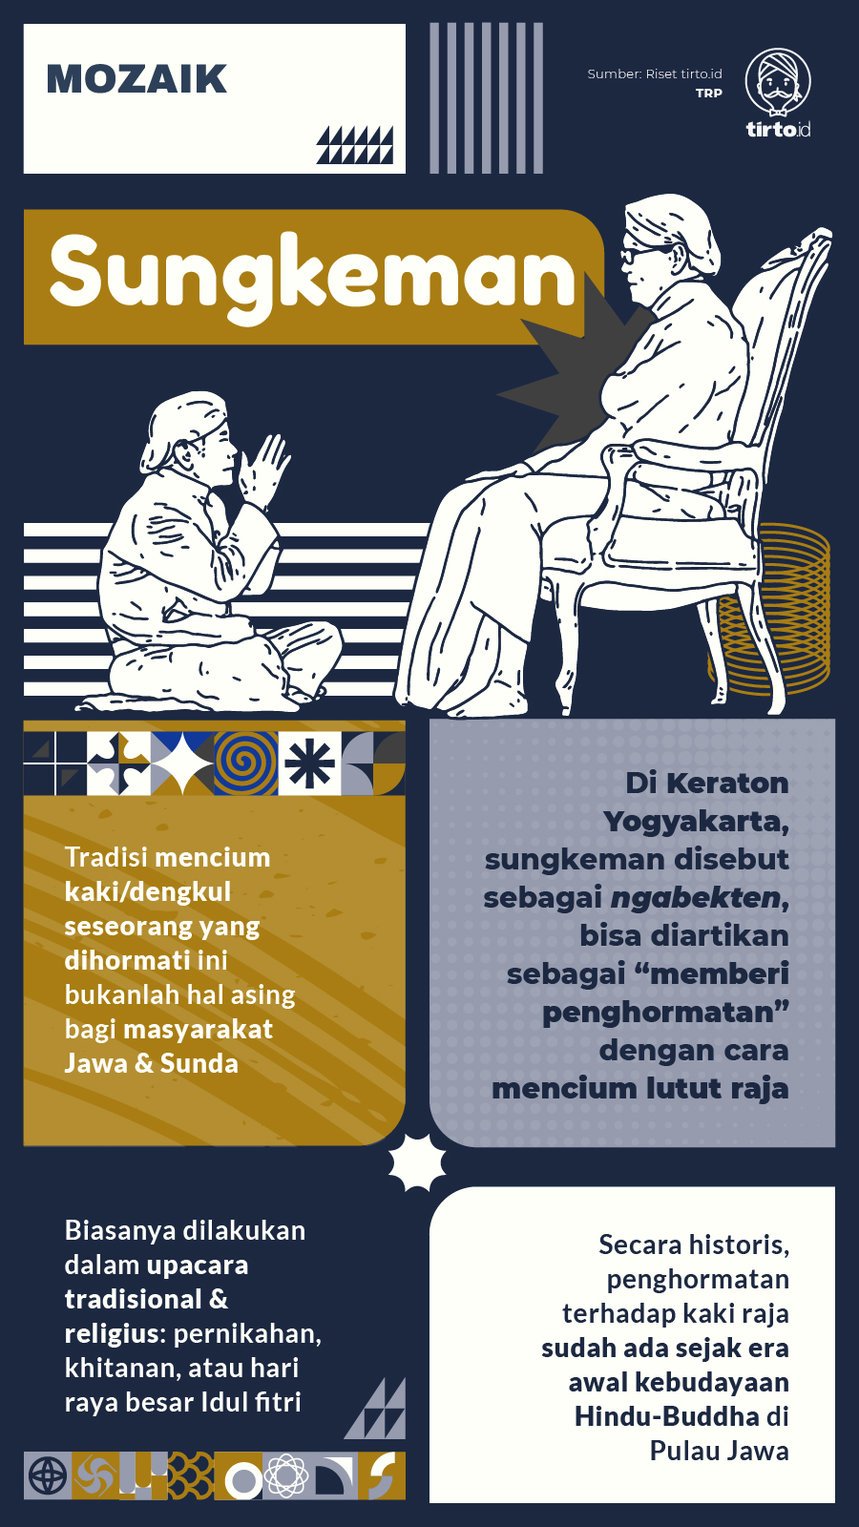 Infografik Mozaik Sungkeman